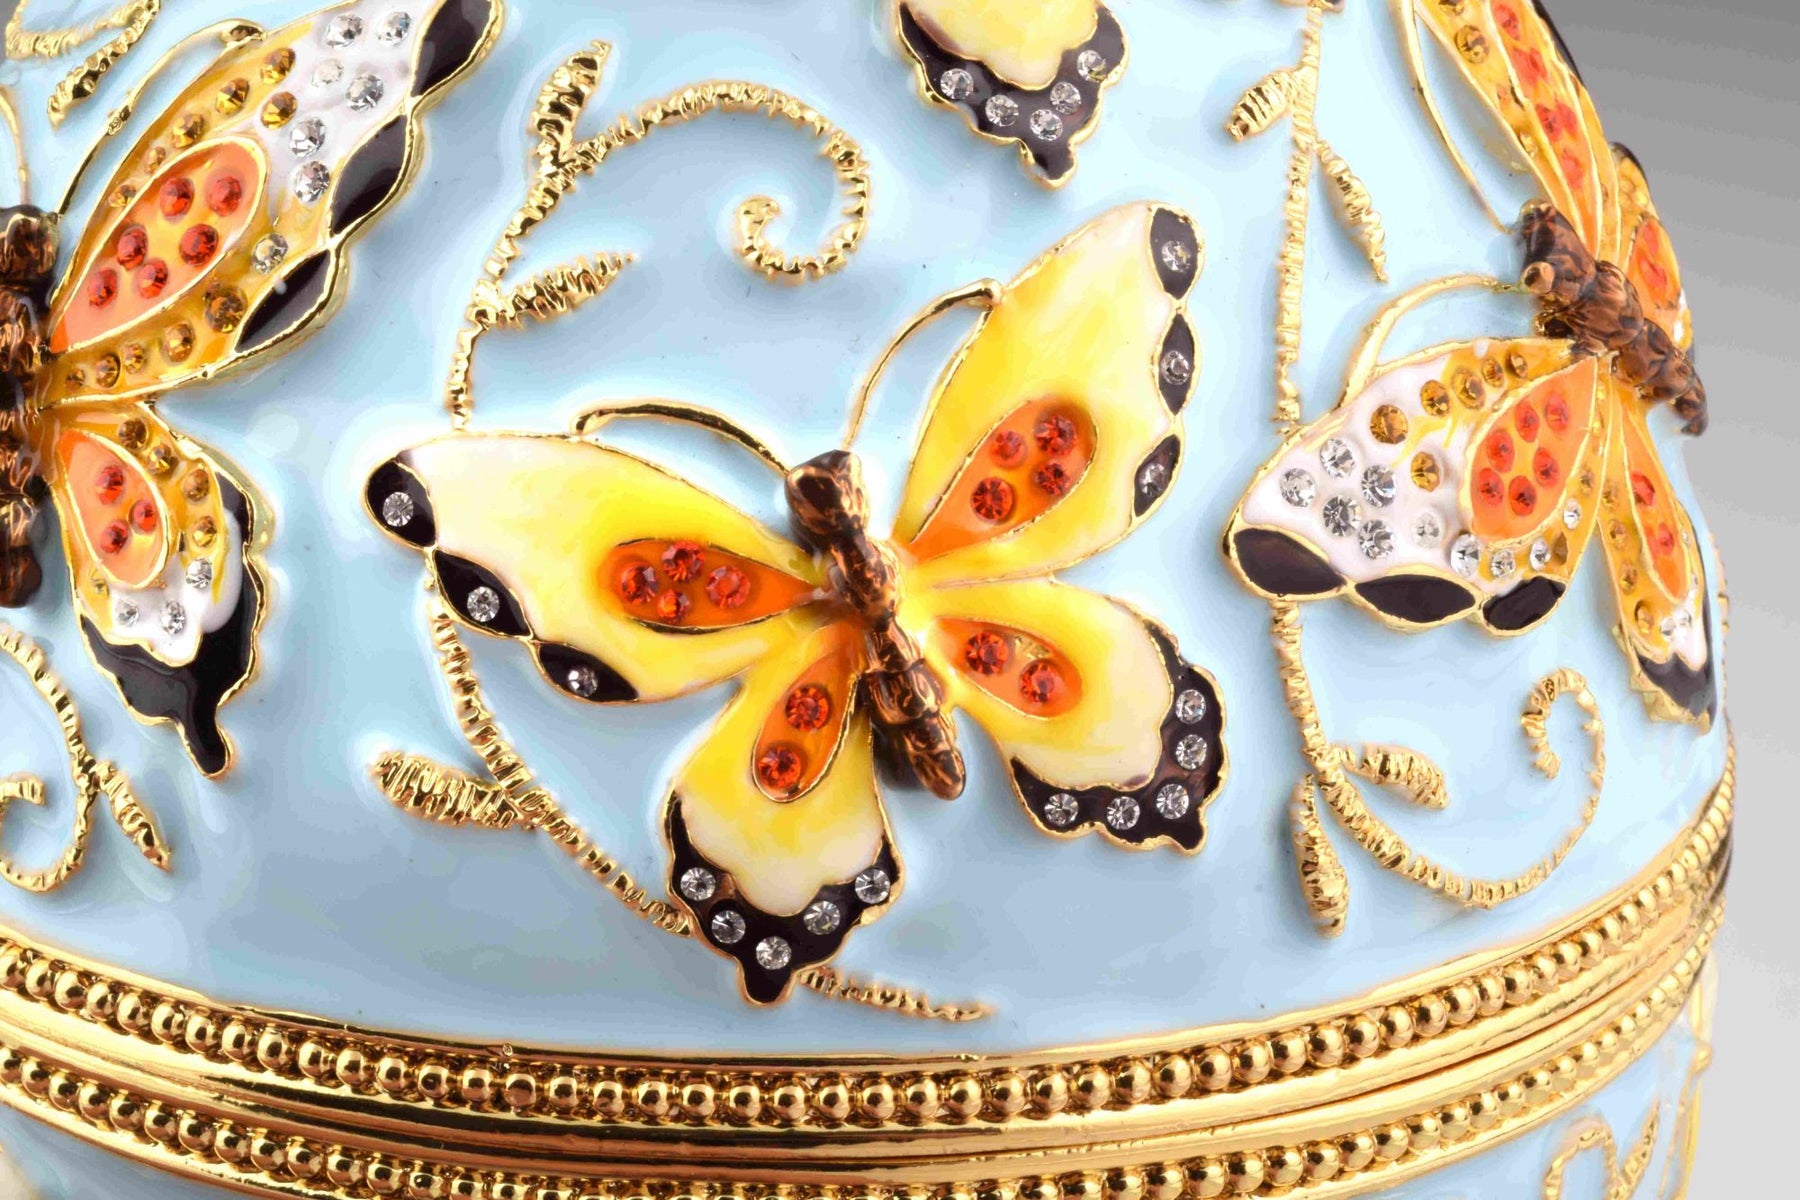 Blaues Fabergé-Ei mit gelben Blumen